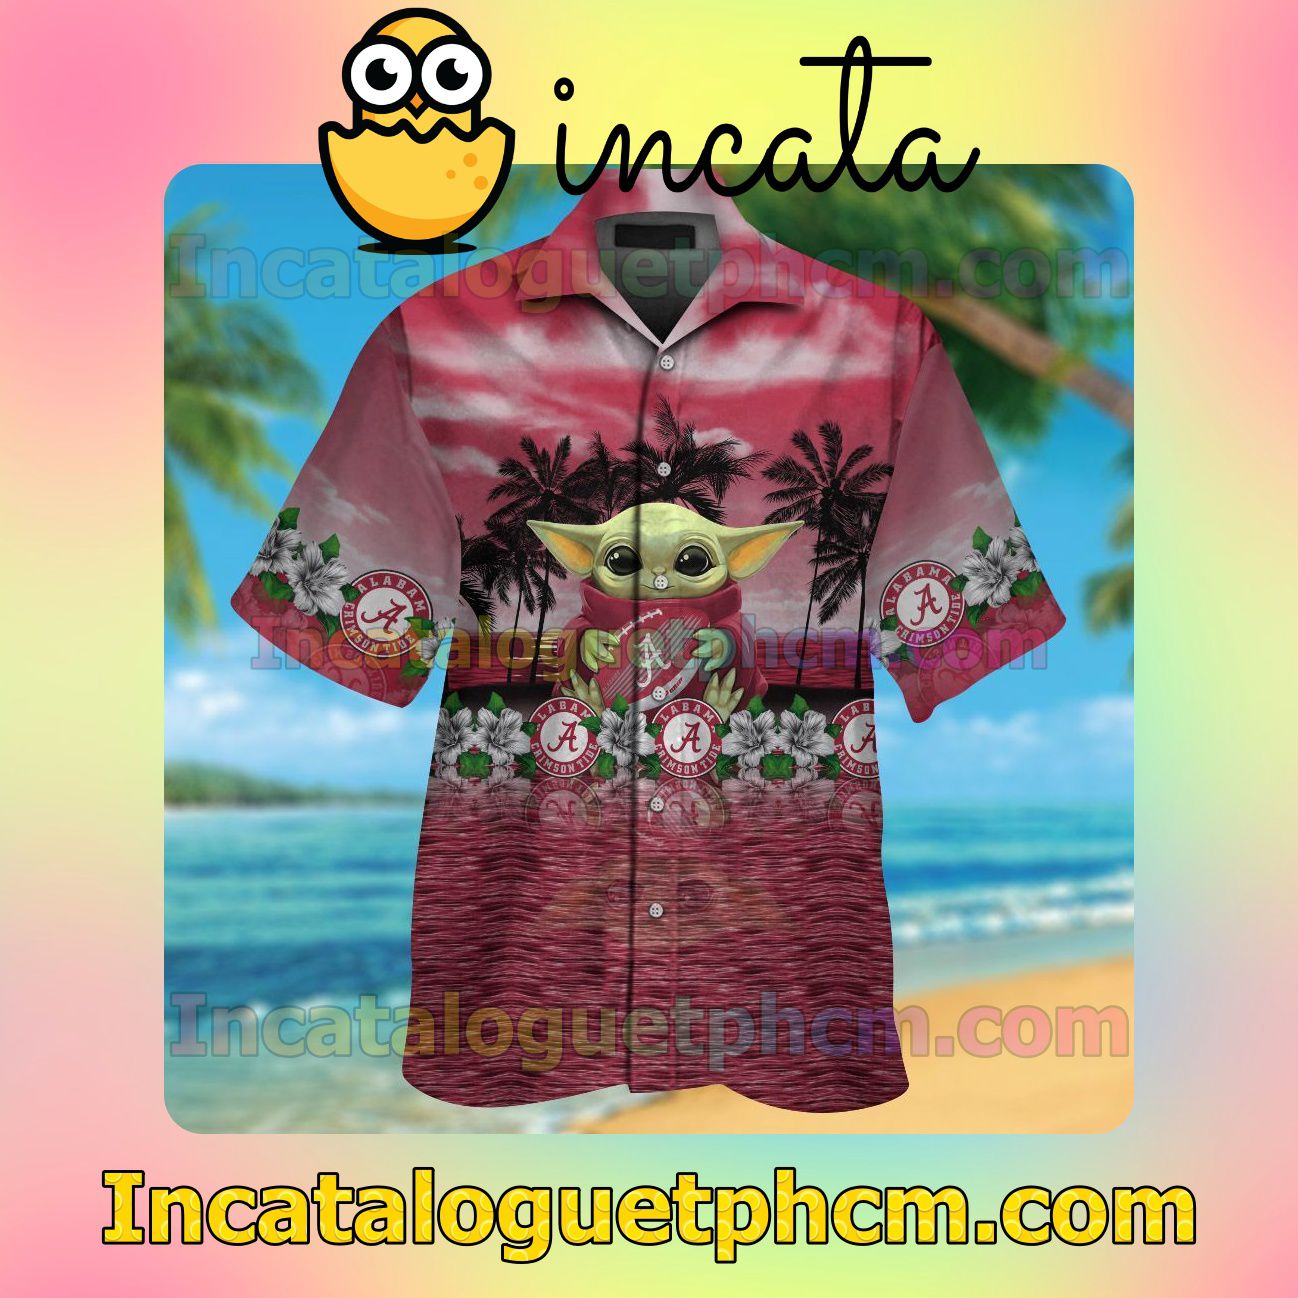 Alabama Crimson Tide & Baby Yoda Beach Vacation Shirt, Swim Shorts